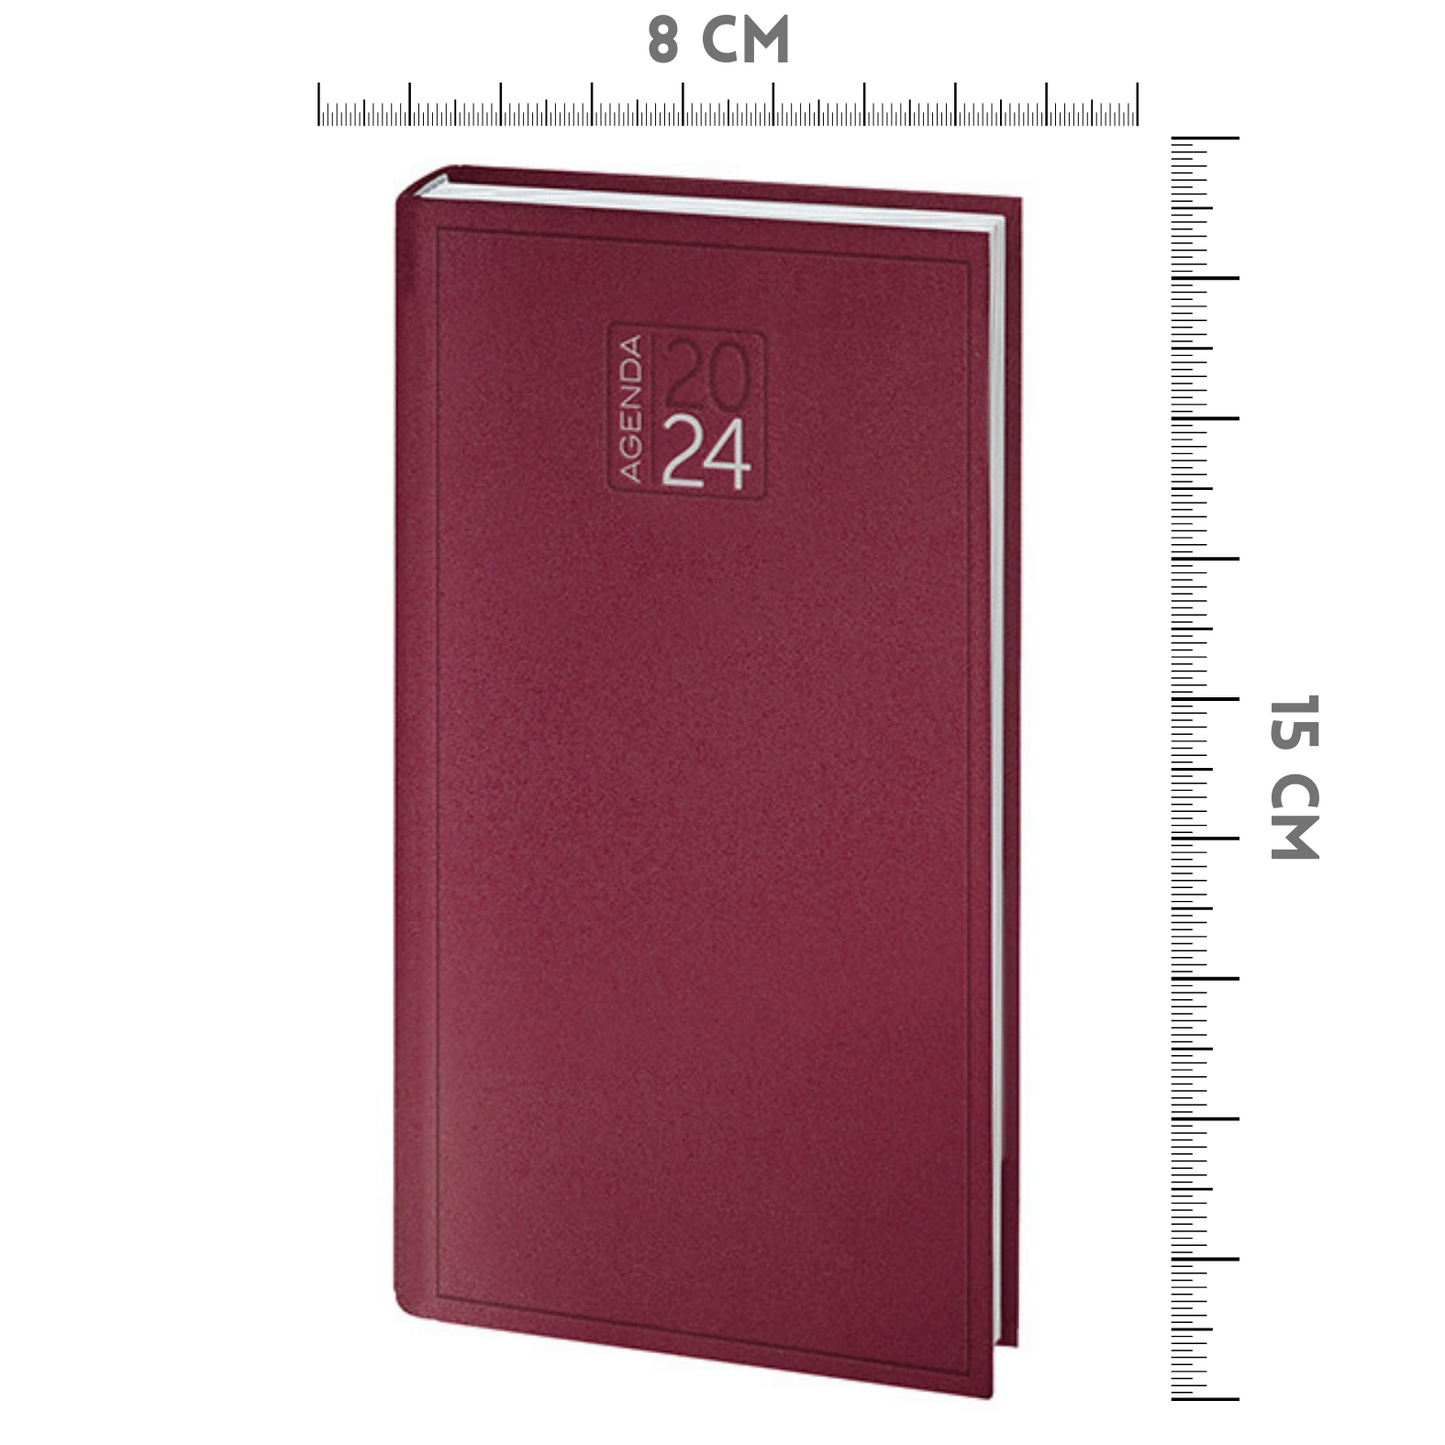 Agende personalizzate tascabili 2024 settimanale 8x15 cm | Cod. PB550